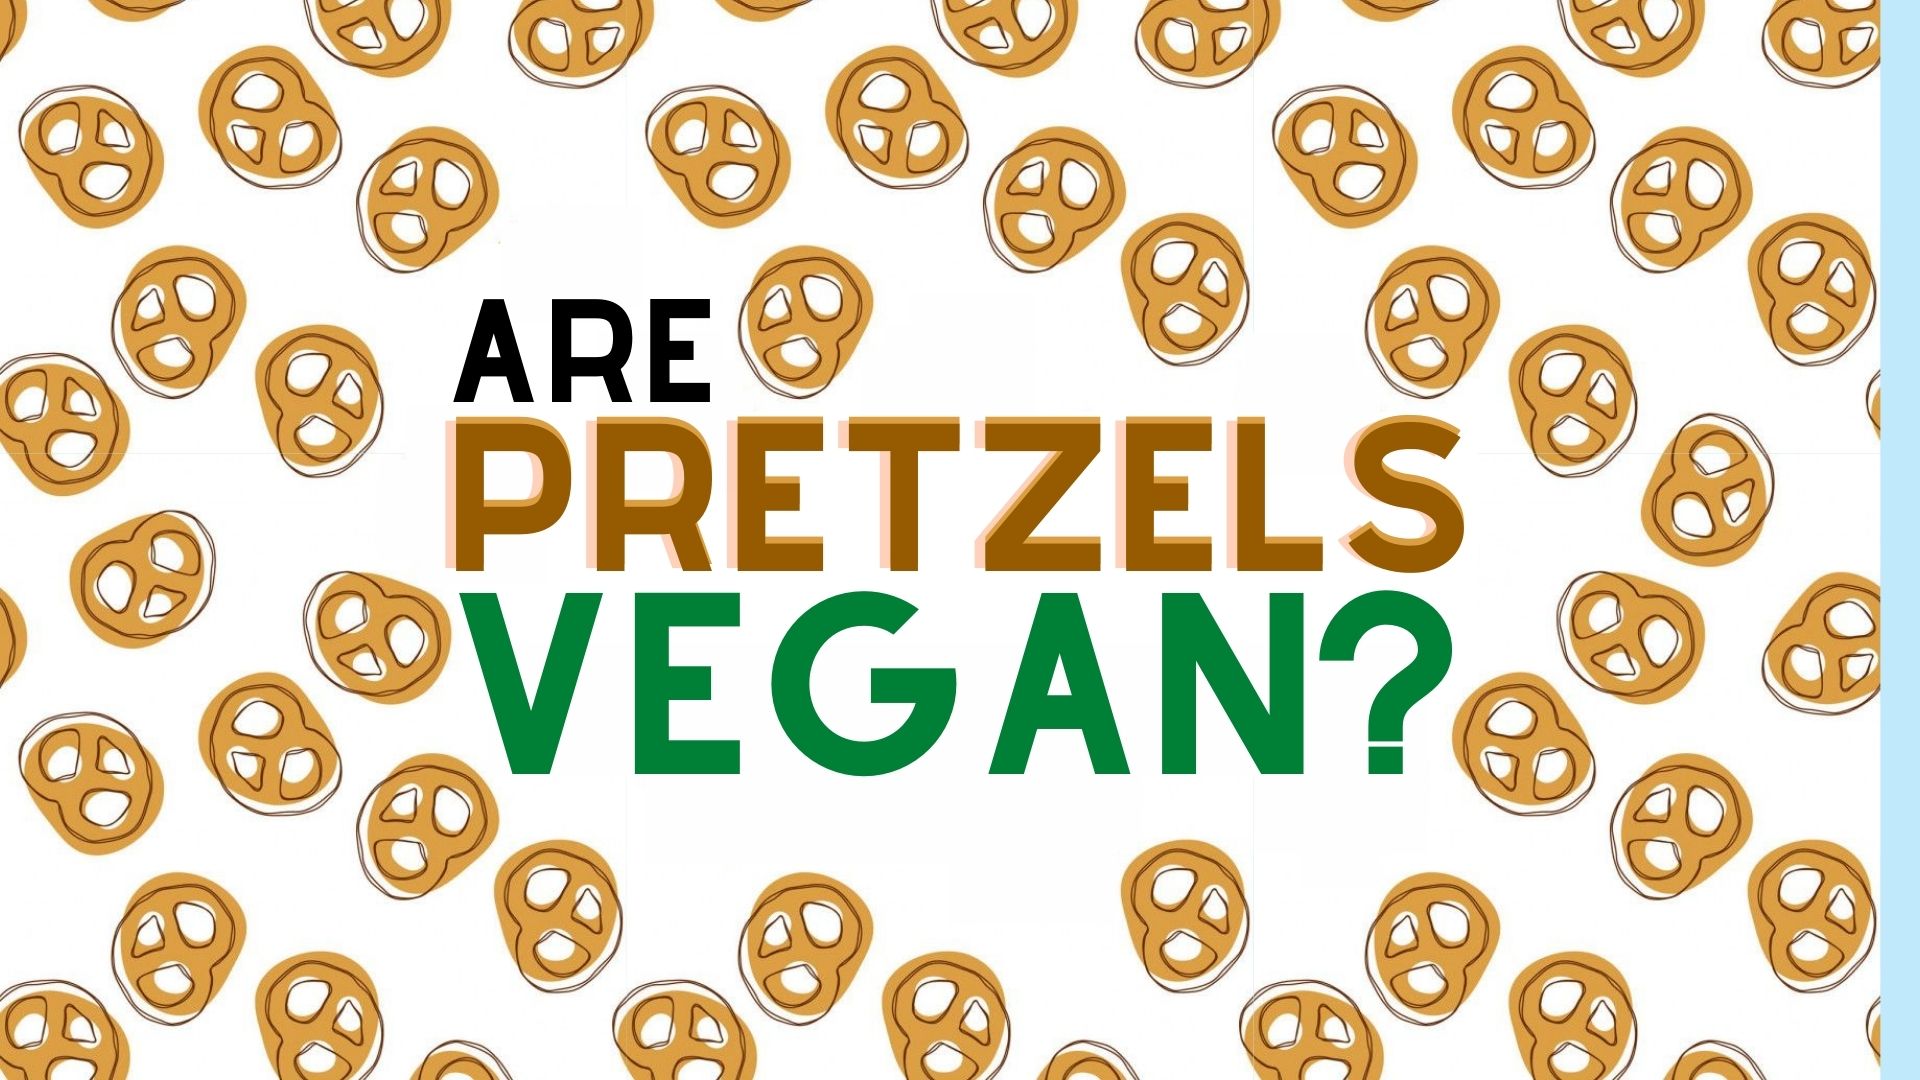 Are Pretzels Vegan